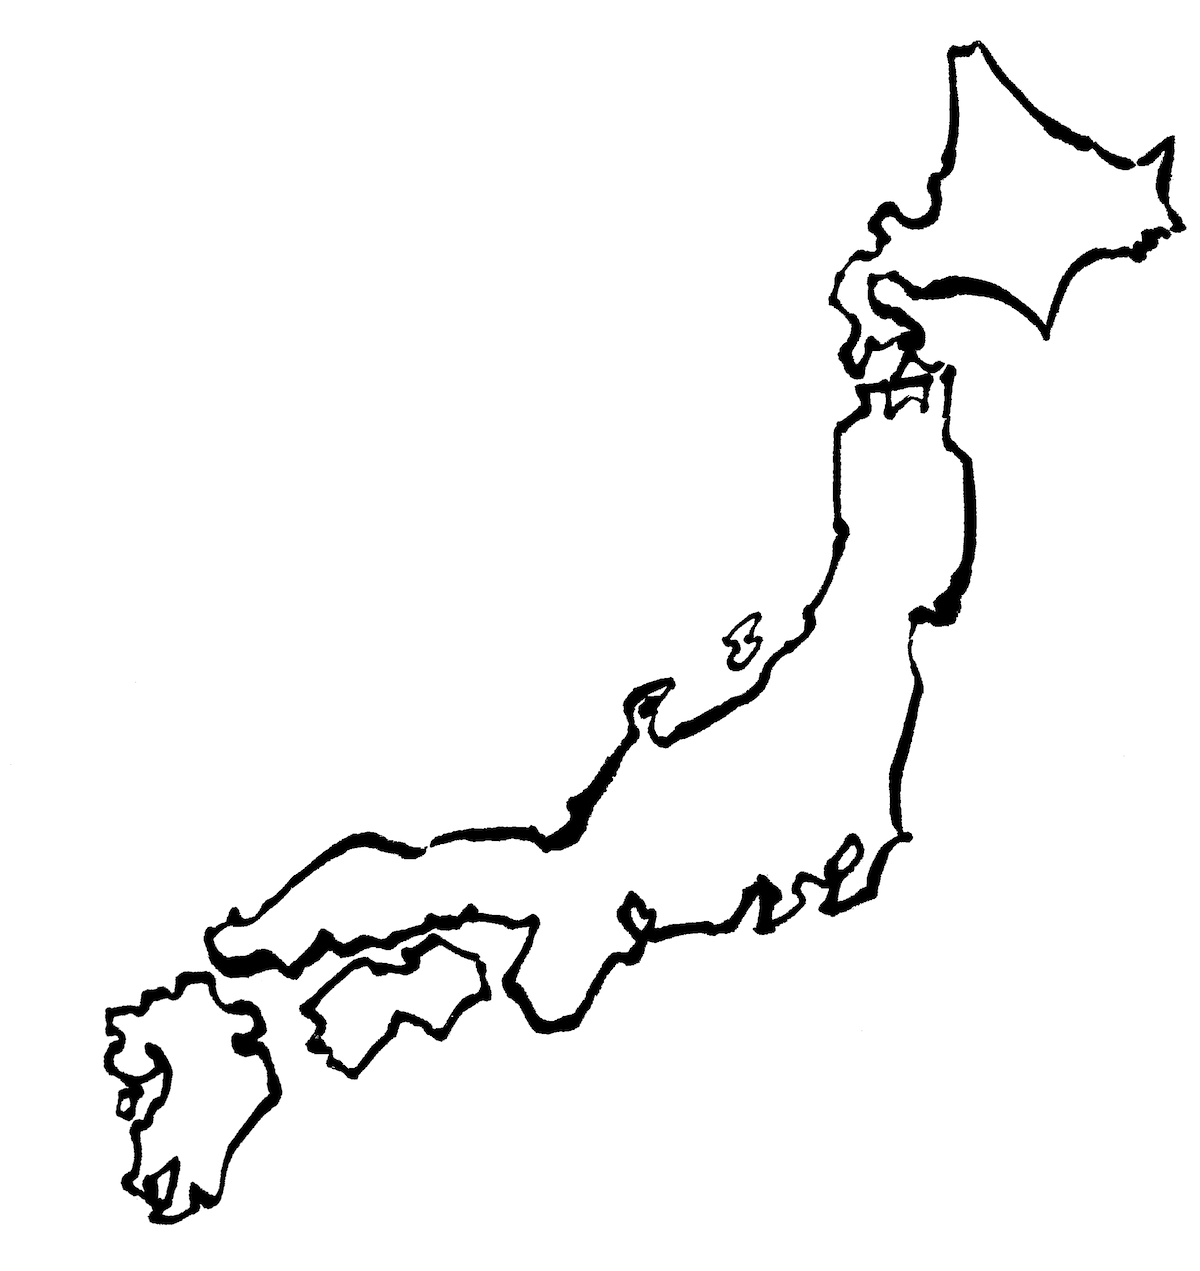 墨で描いた日本地図 墨絵和風素材 無料イラスト配布サイトマンガトップ